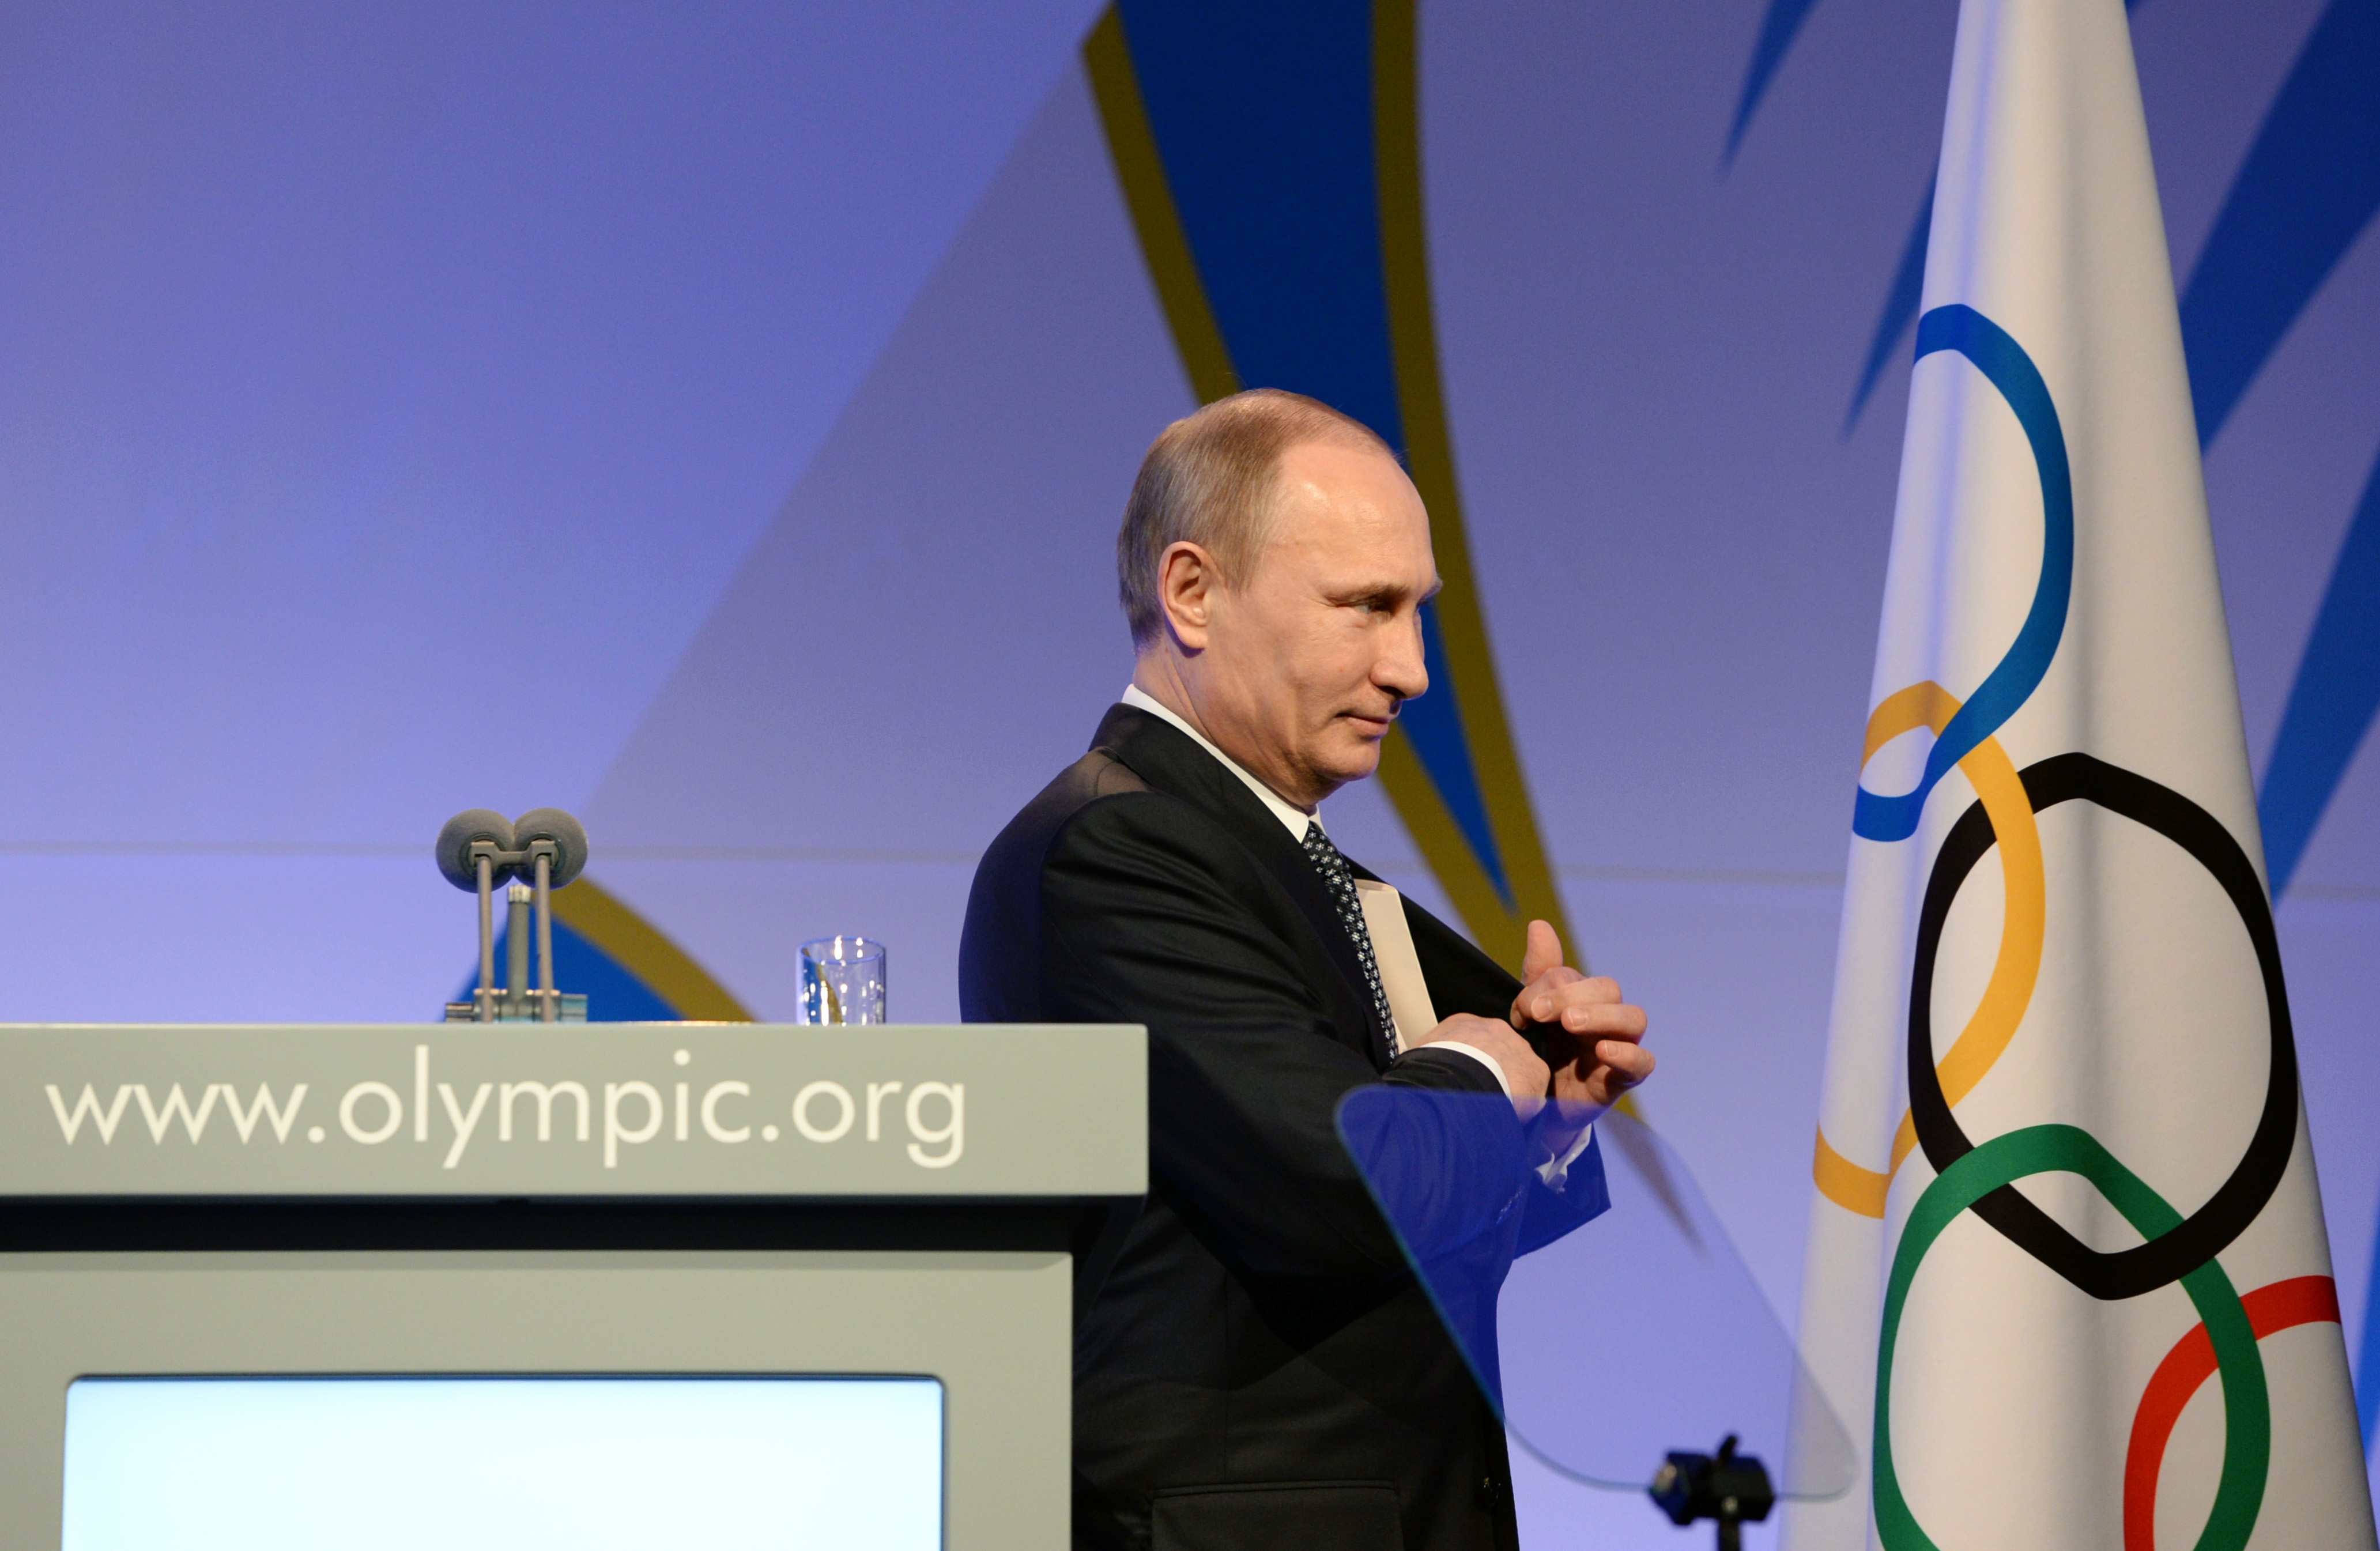 Tras el exitoso Mundial de fútbol, Rusia ya piensa en postularse para los Juegos Olímpicos